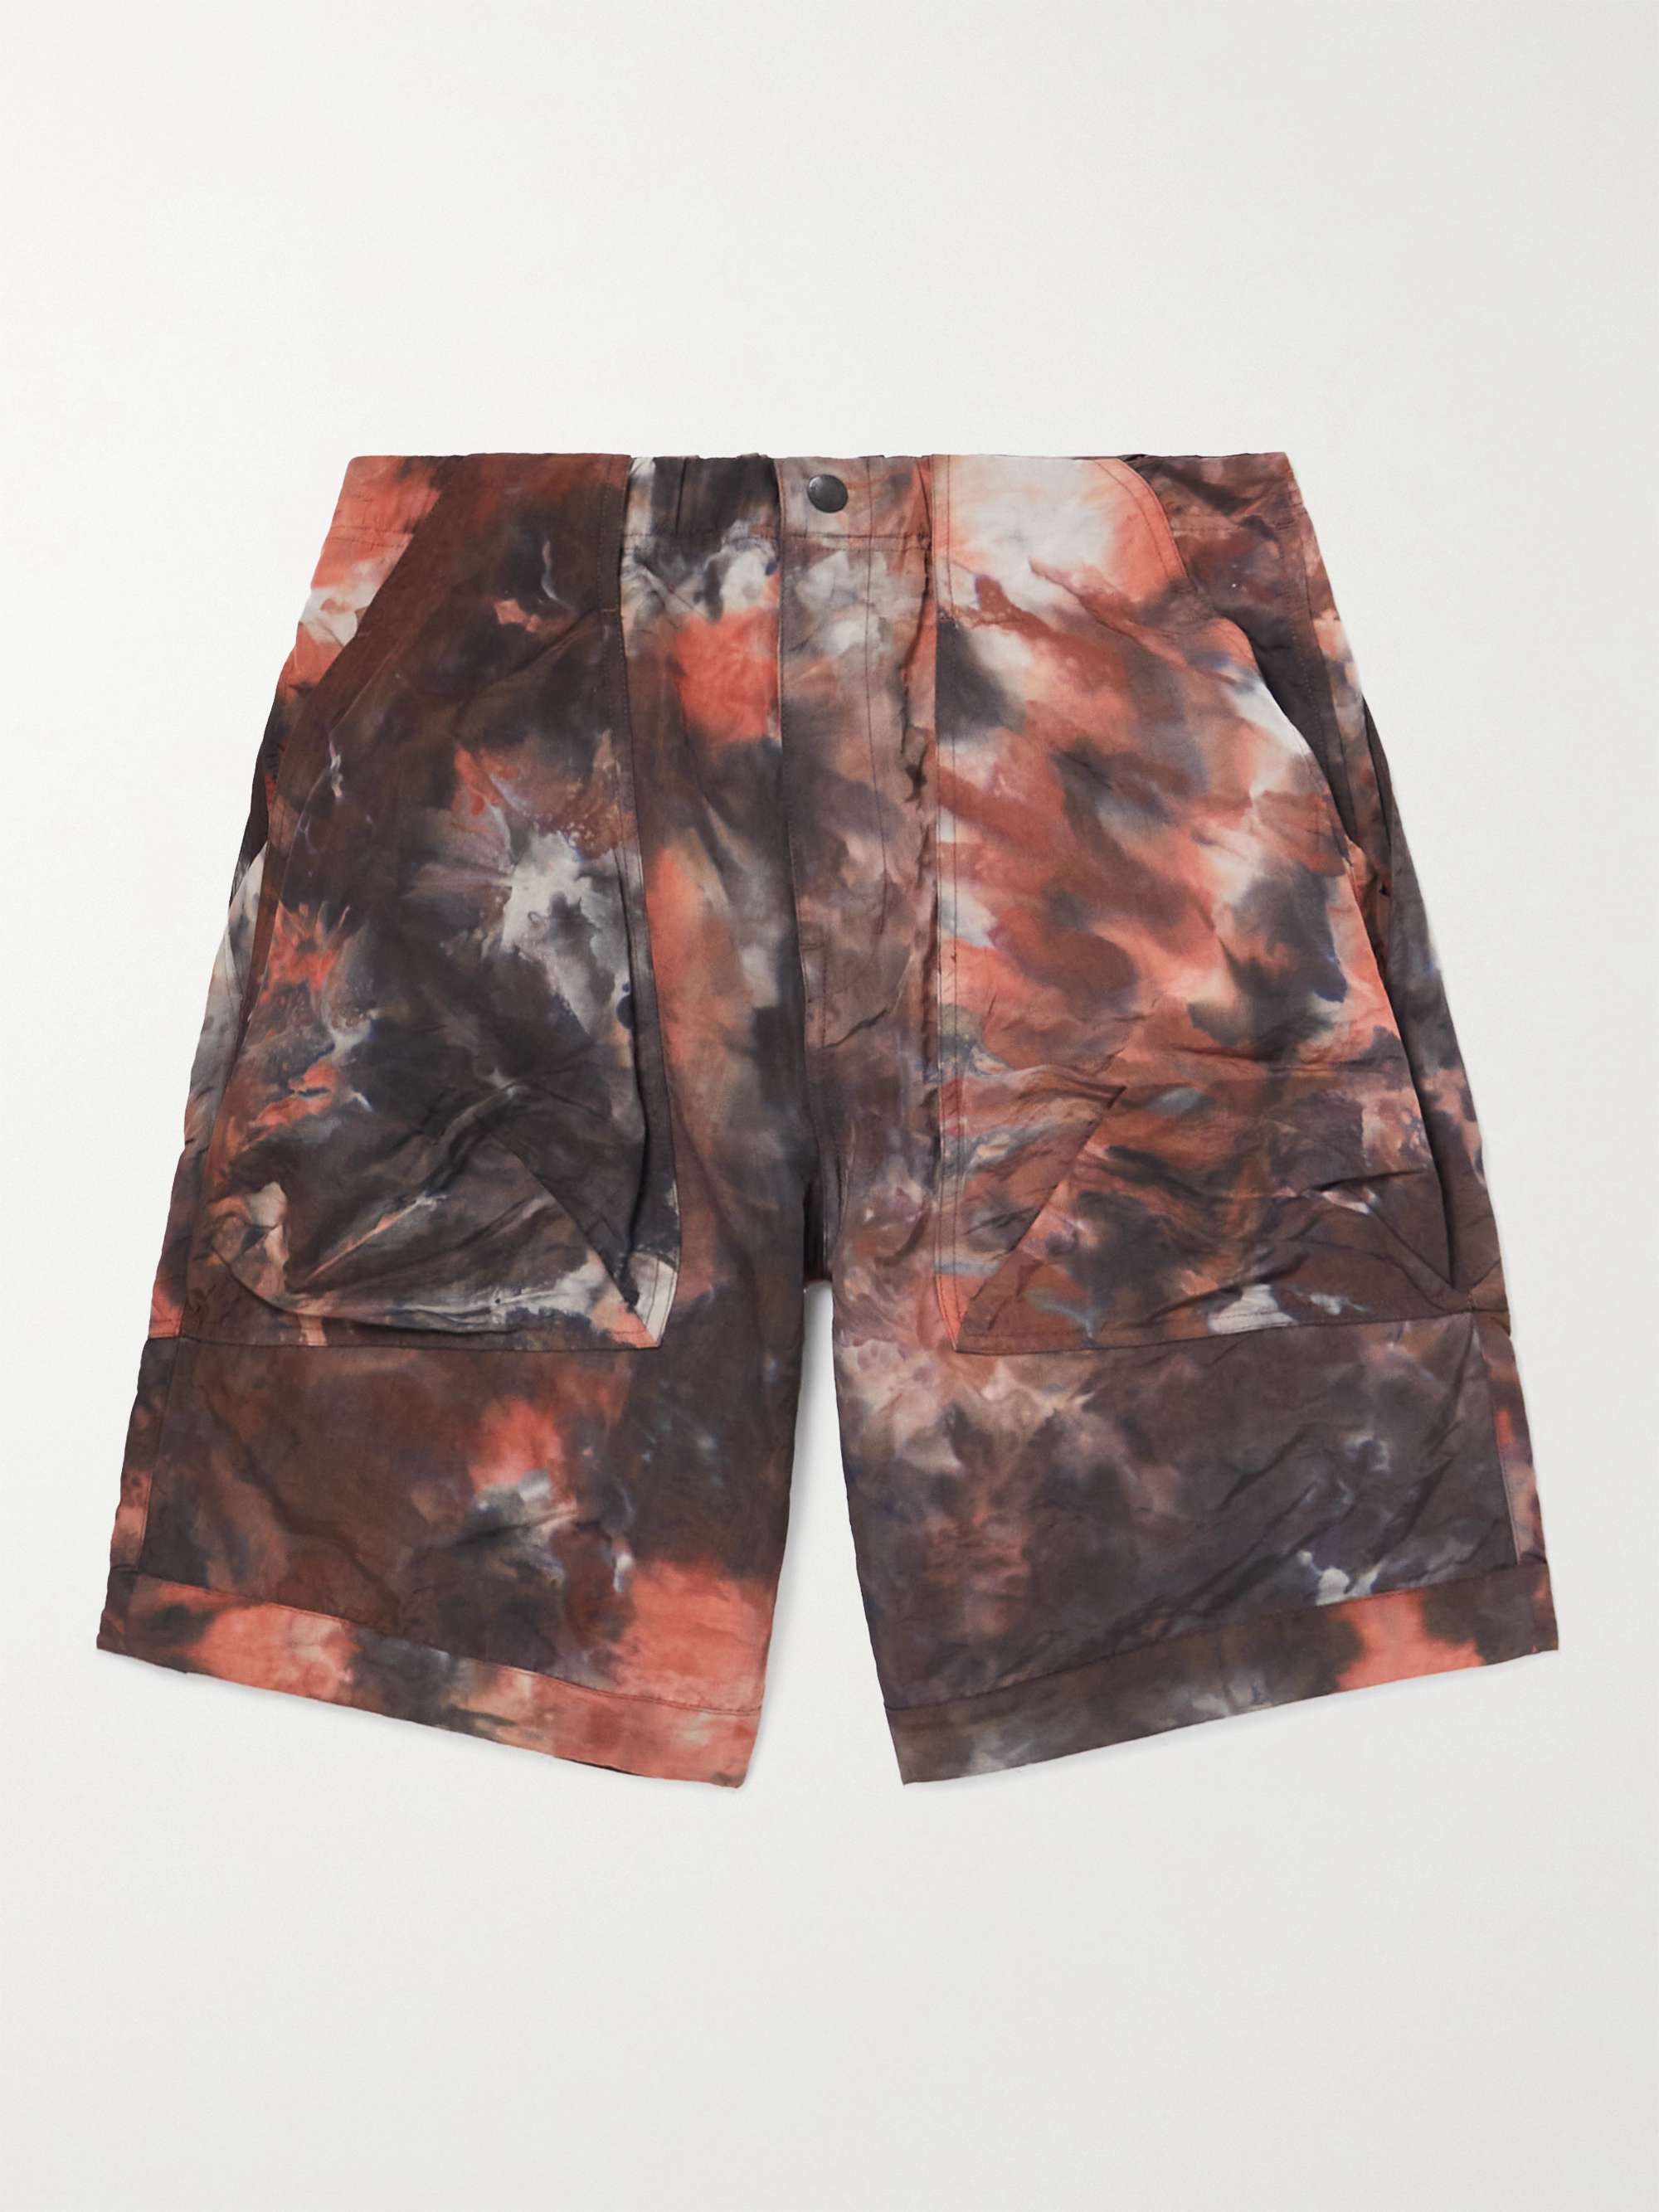 NORBIT BY HIROSHI NOZAWA Straight-Leg Crinkled Tie-Dye Nylon Cargo Shorts